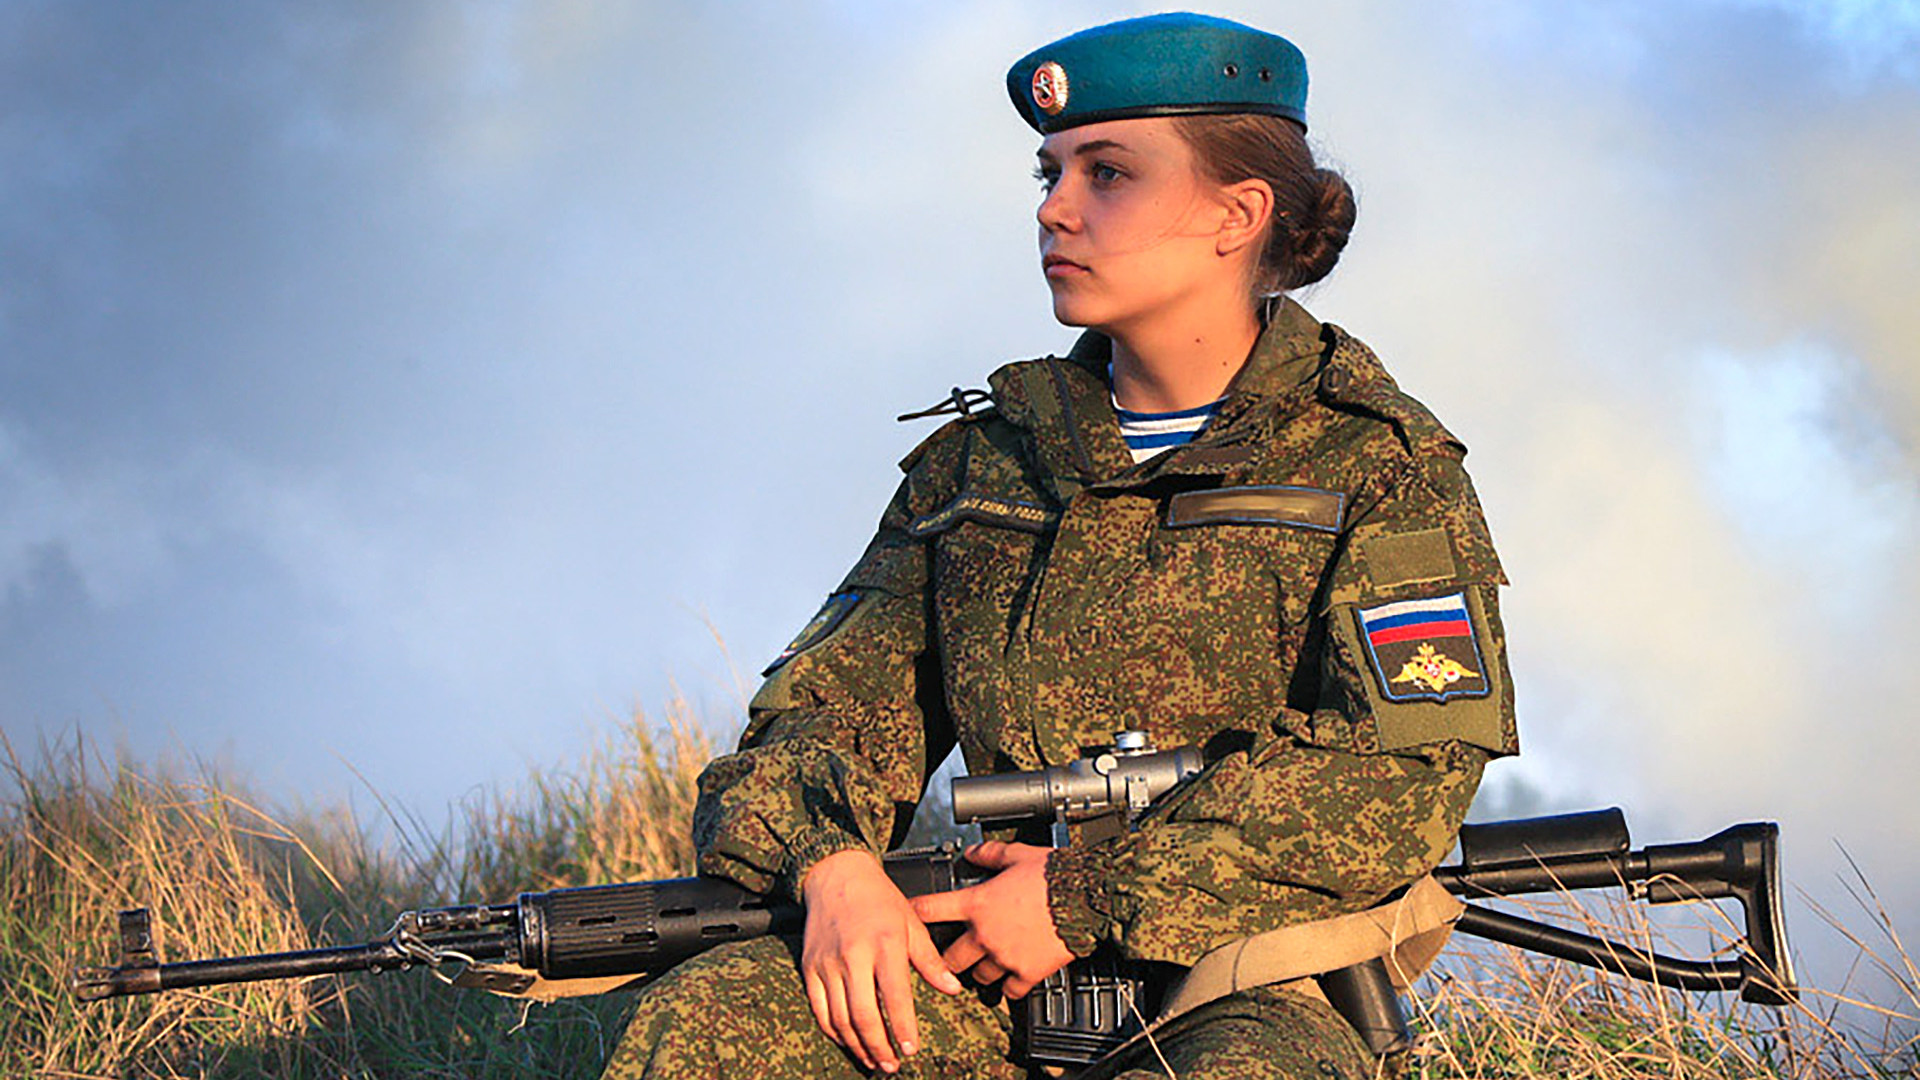 Про военную форму. Женщины военнослужащие. Военная форма. Женщины в русской армии. Русские девушки в военной форме.